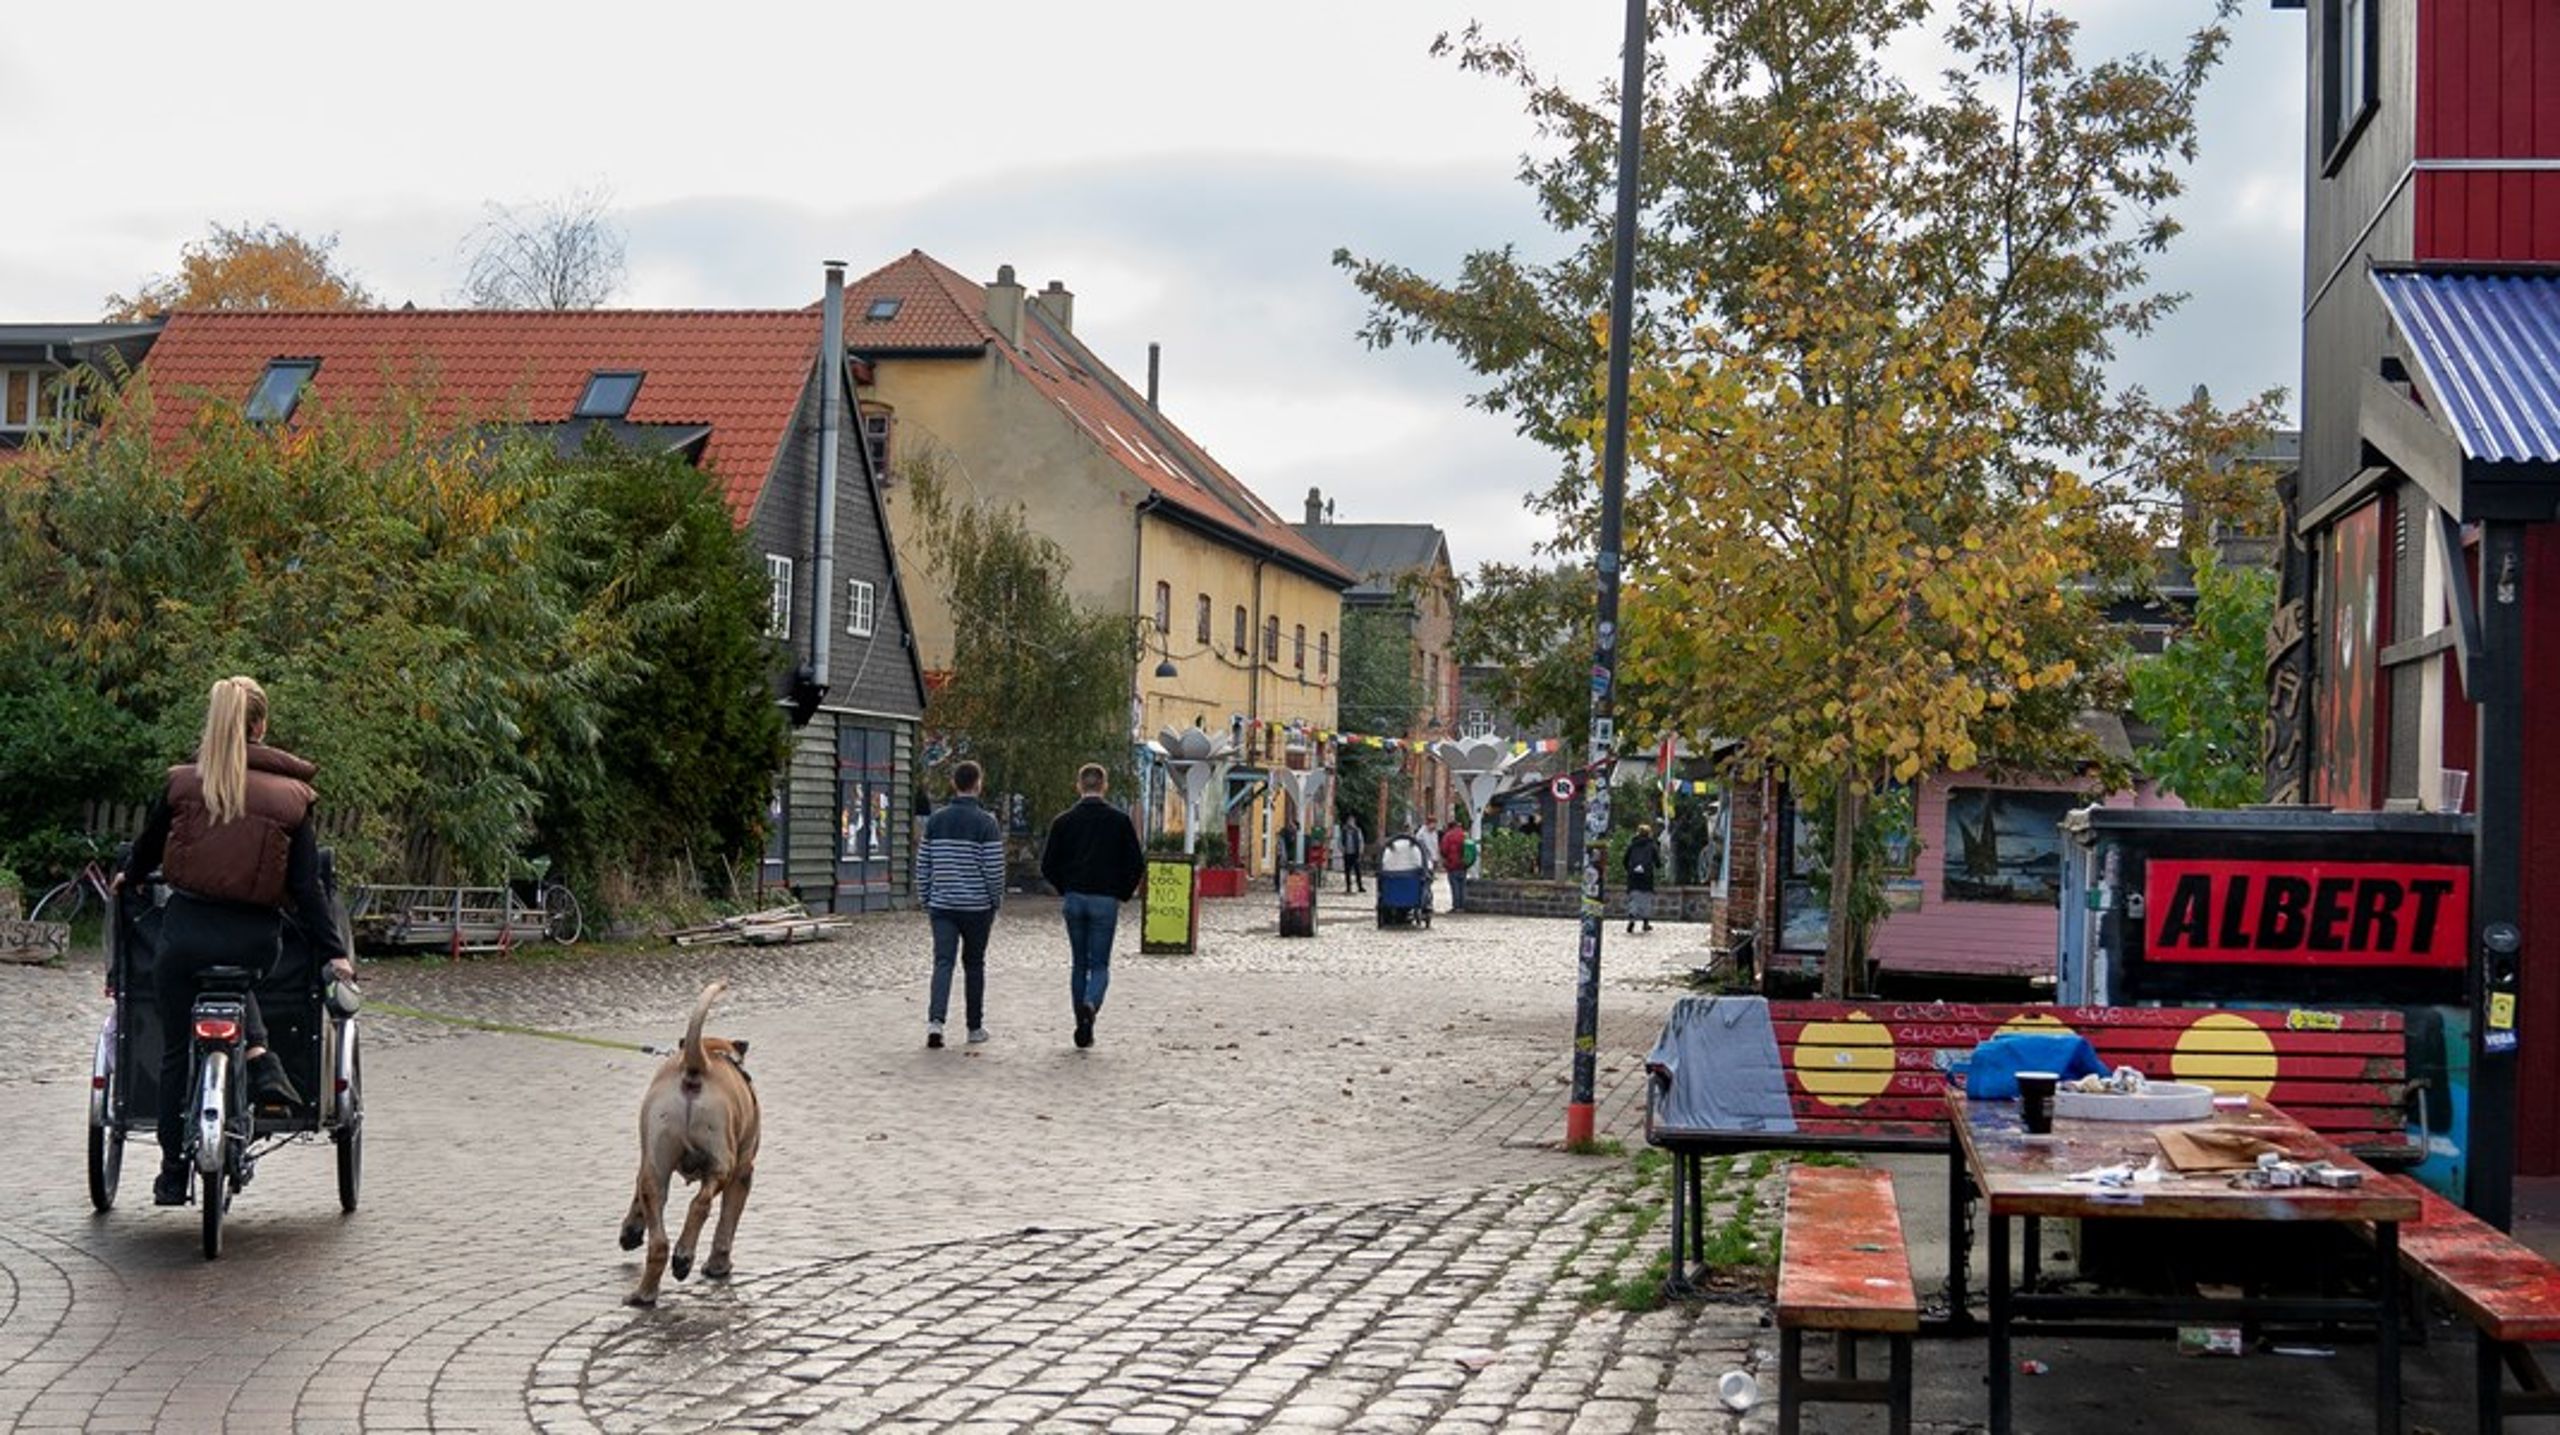 Næste skridt er en normalisering af Christiania, som vi ser frem til med stor begejstring. Vi er ikke i tvivl om, at opførslen af 15.000 kvadratmeter boliger vil medvirke til at tage brodden af hele miseren, skriver Niels Peder Ravn.